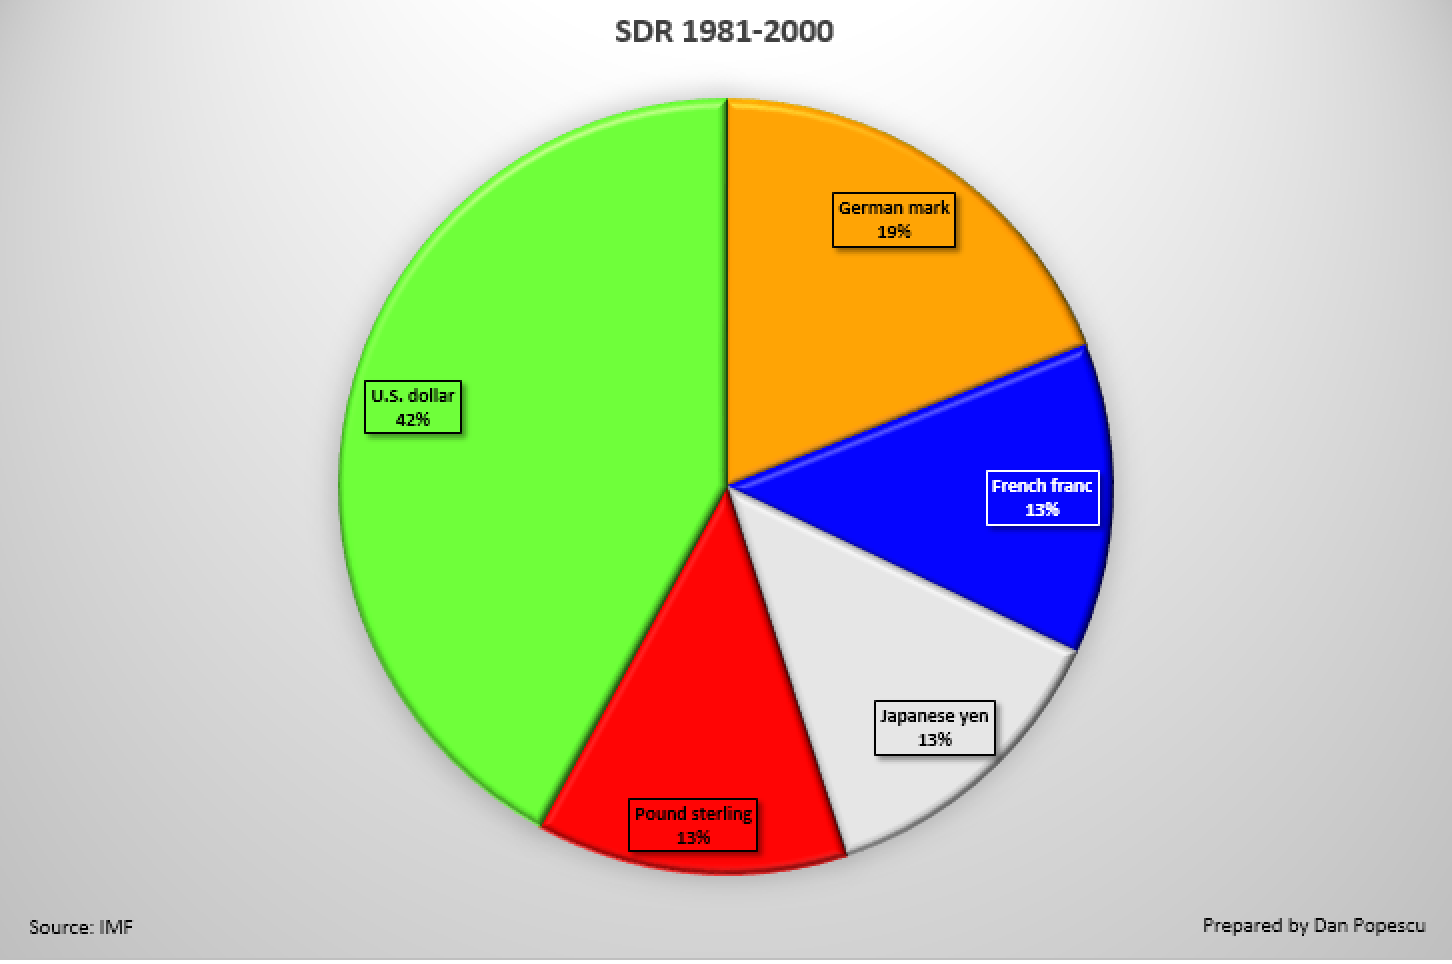 SDR 1980 - 2000